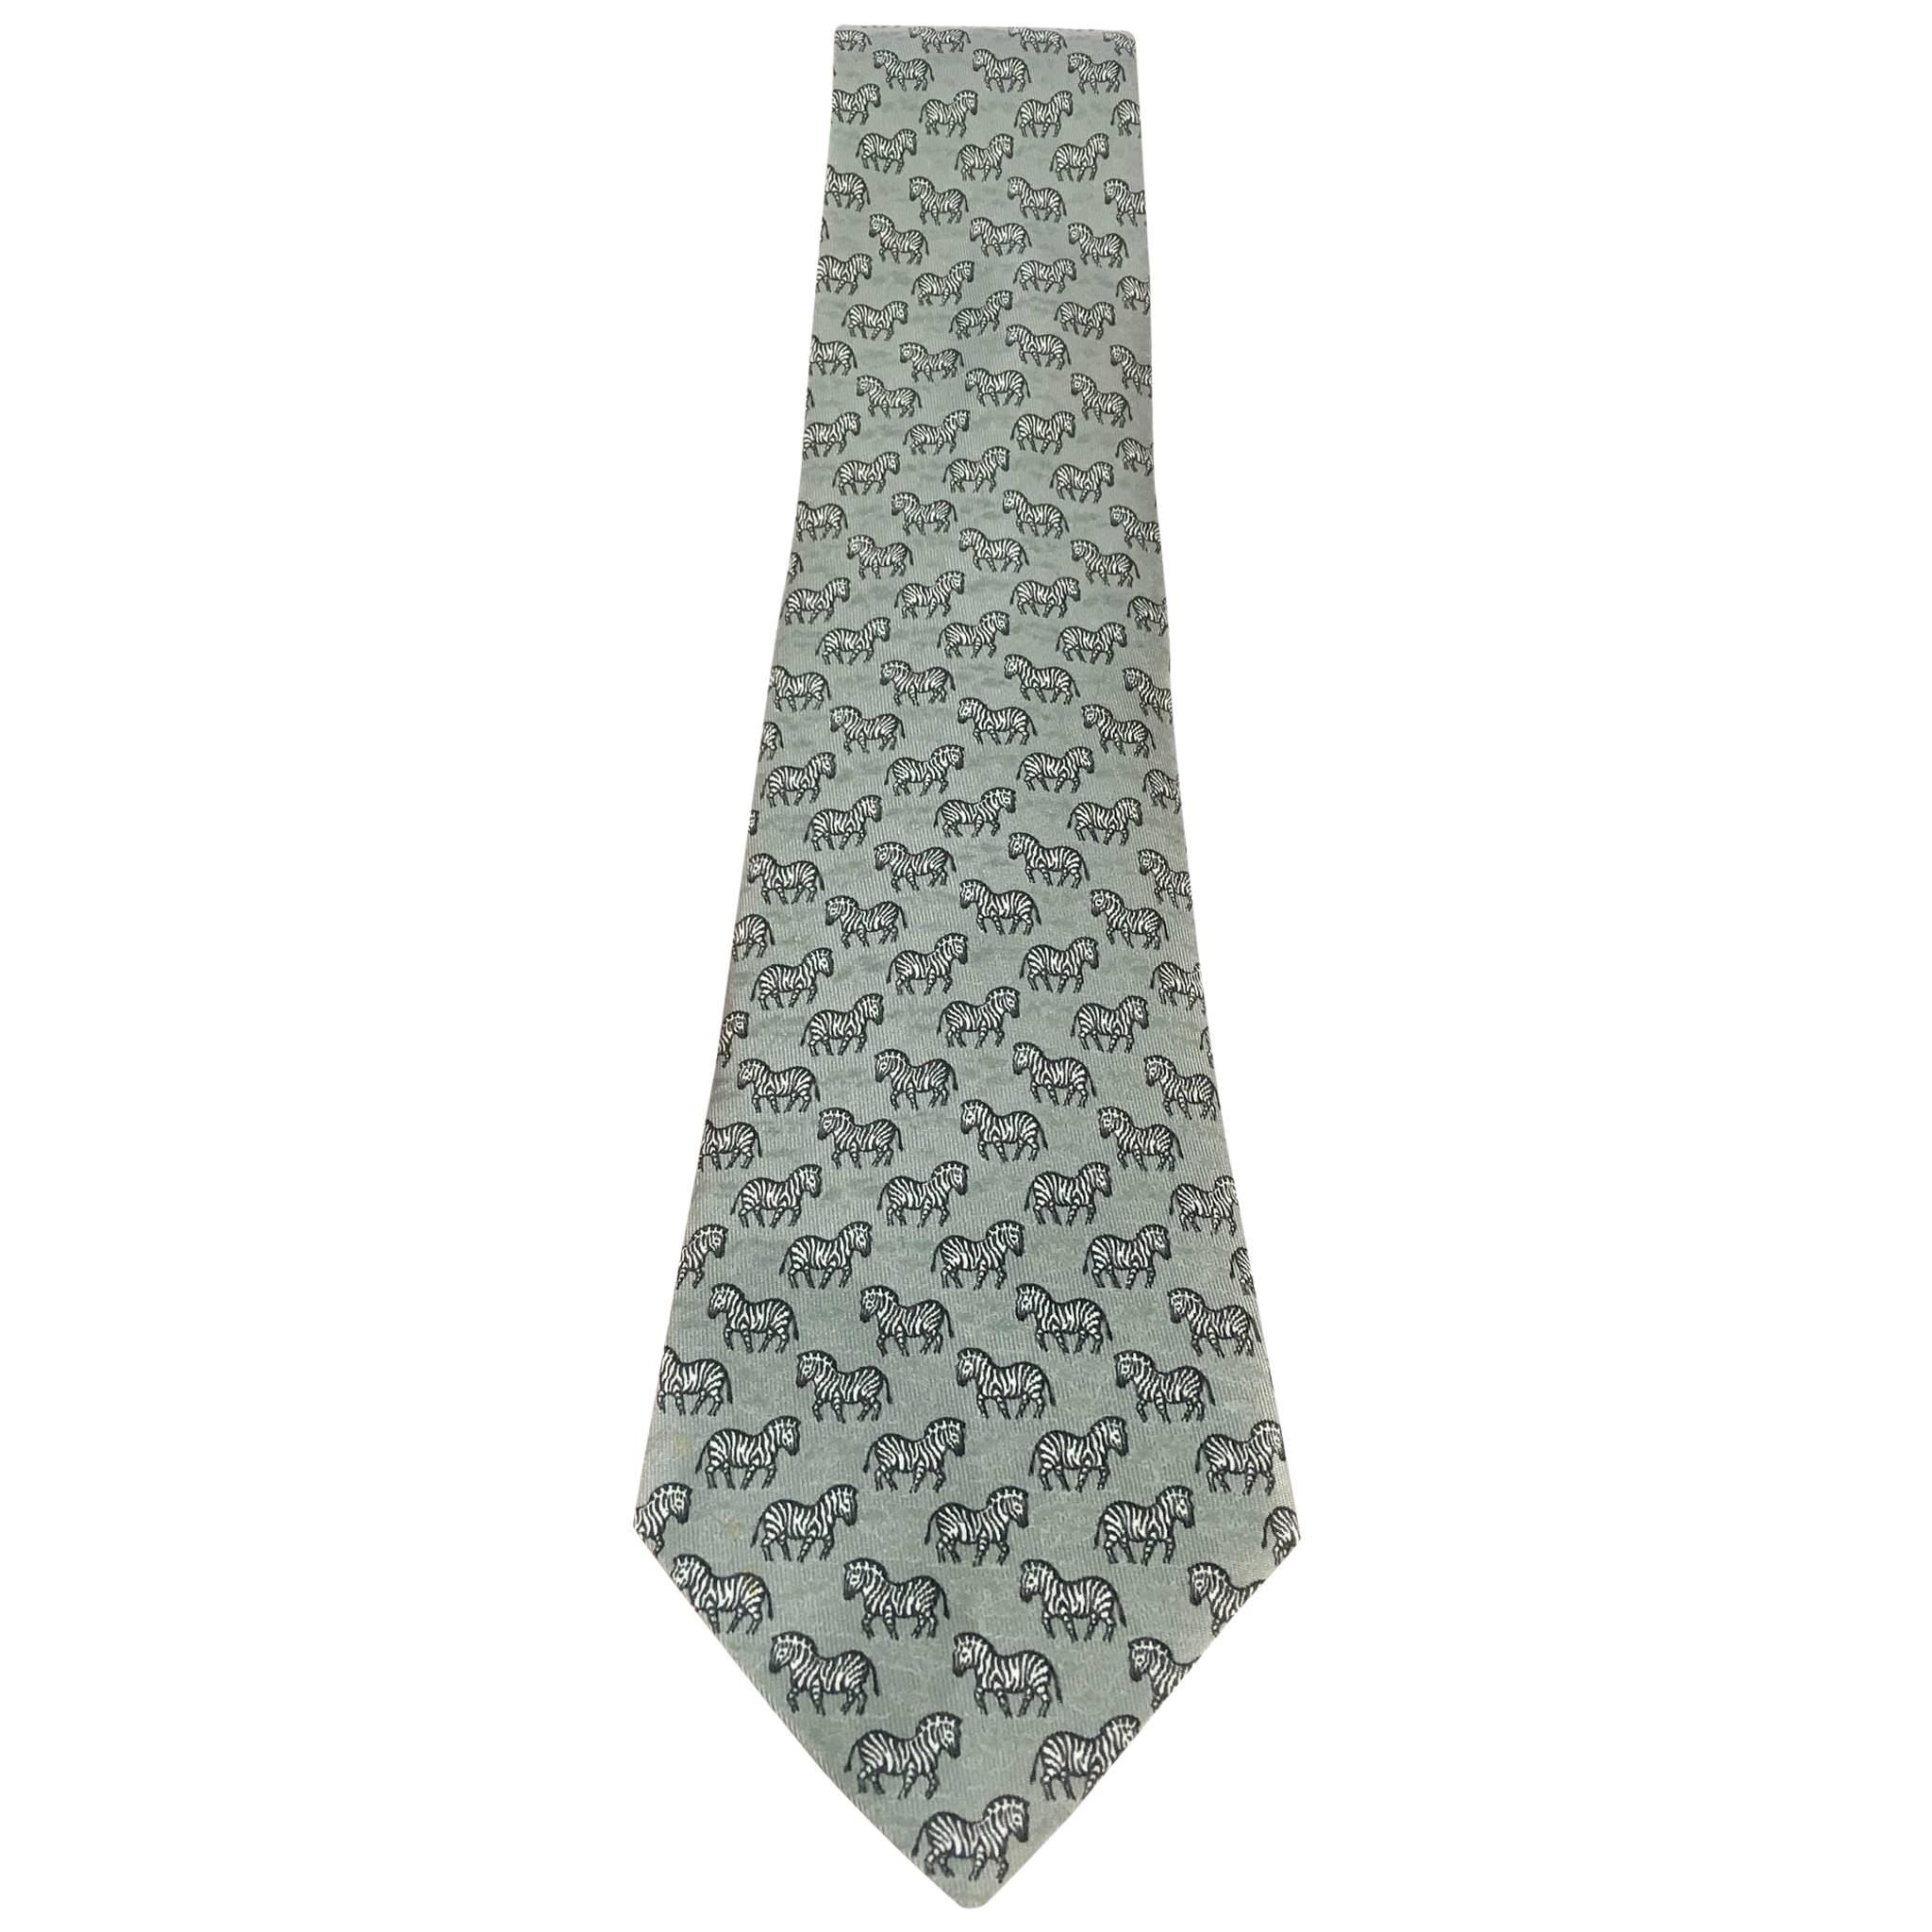 Hermes Tie with Zebra Pattern 7110 OA 